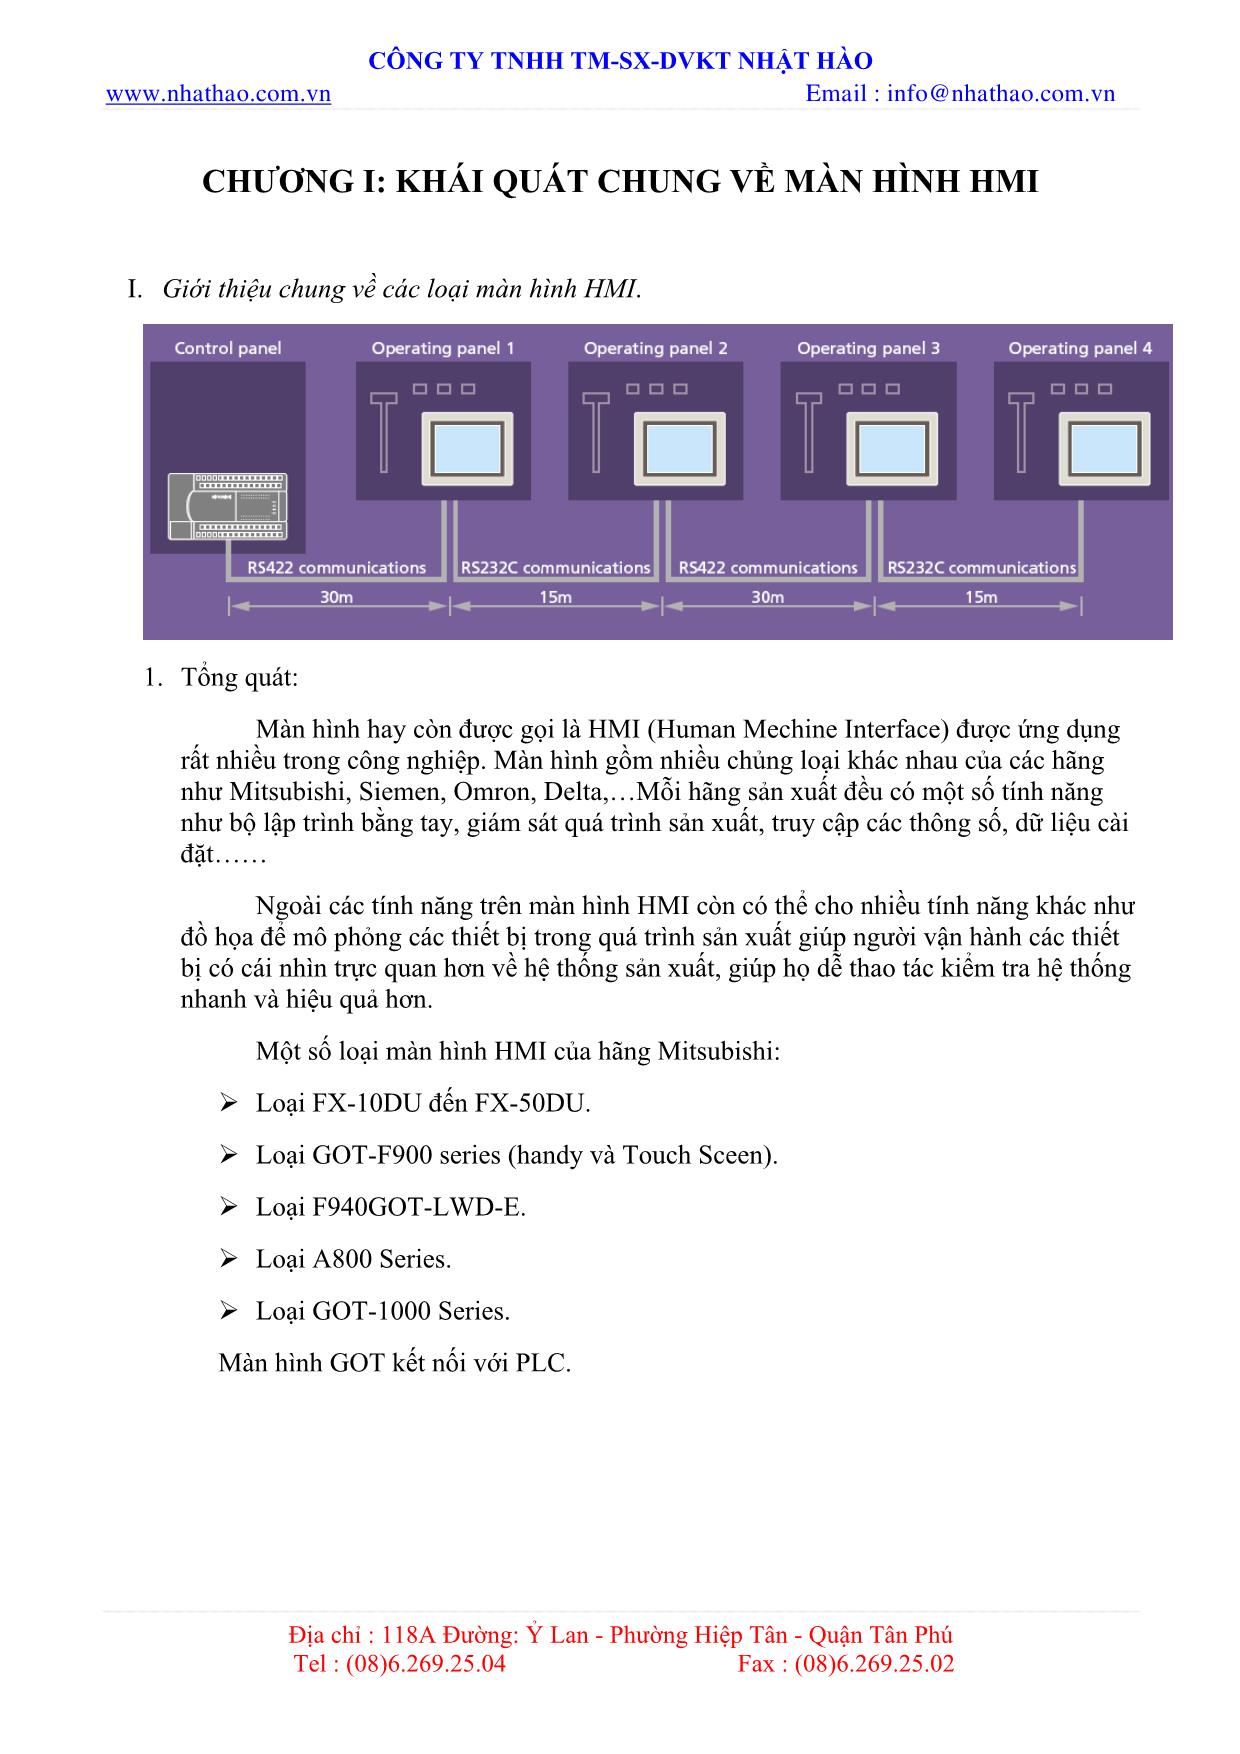 Tài liệu hướng dẫn sử dụng màn hình HMI trang 4